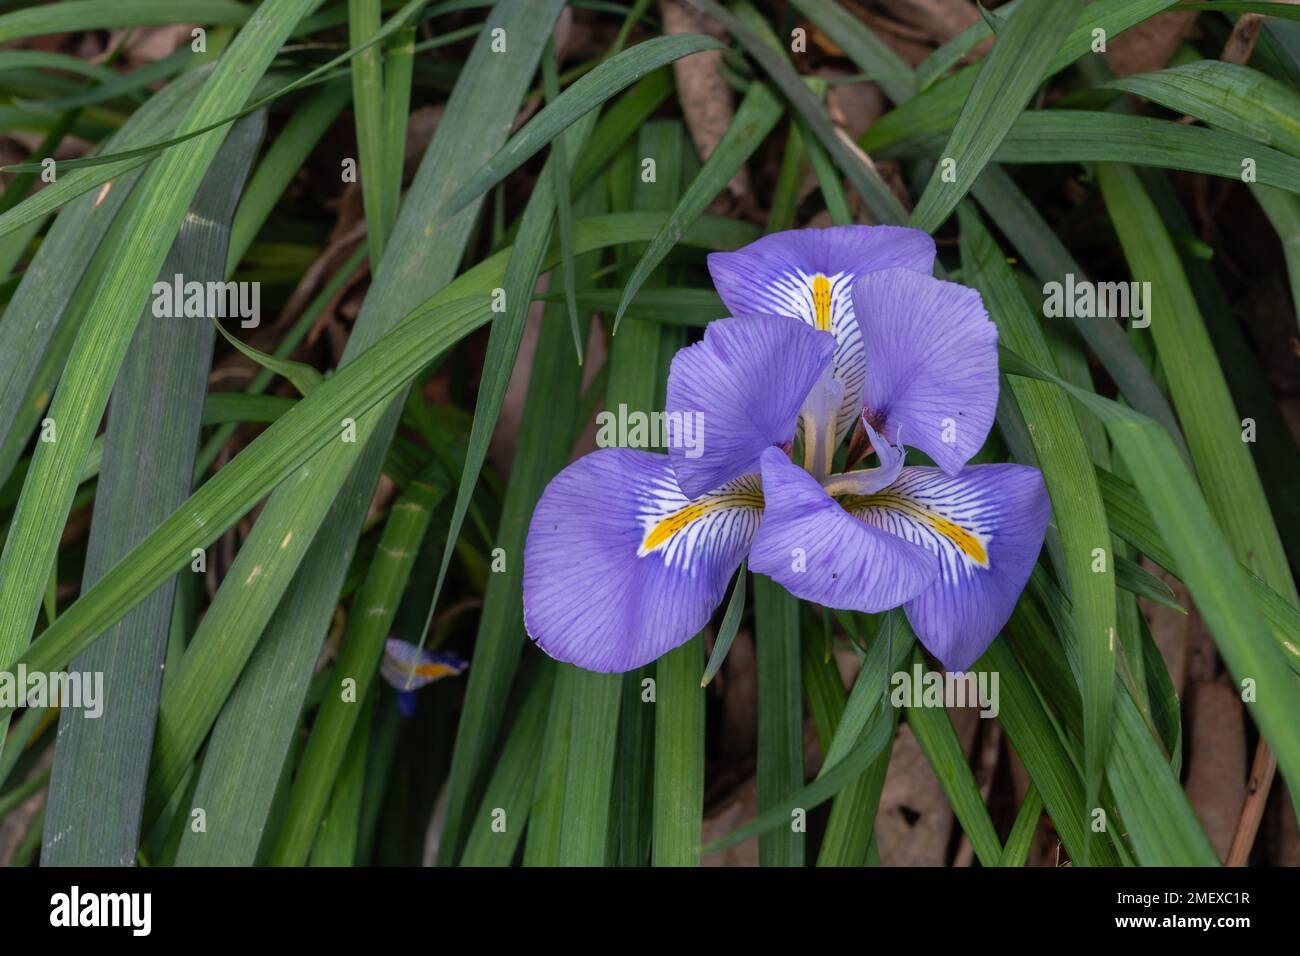 Vue rapprochée de la fleur violette et jaune fraîche de l'iris unguicularis fleurant dans le jardin Banque D'Images